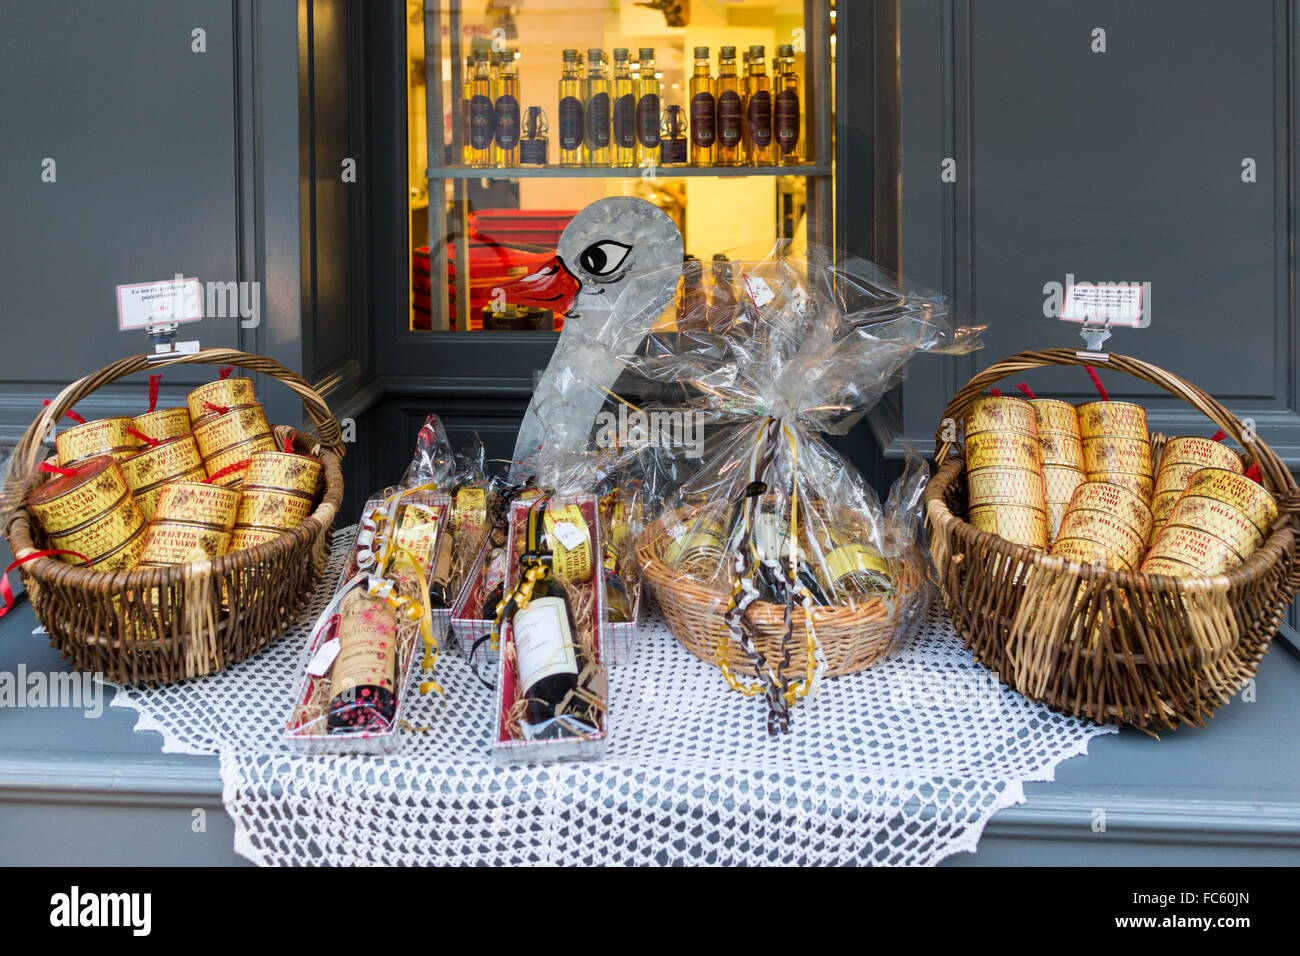 Affichage des produits du terroir, foie gras, vin, Brantome, village de Dordogne, France Banque D'Images